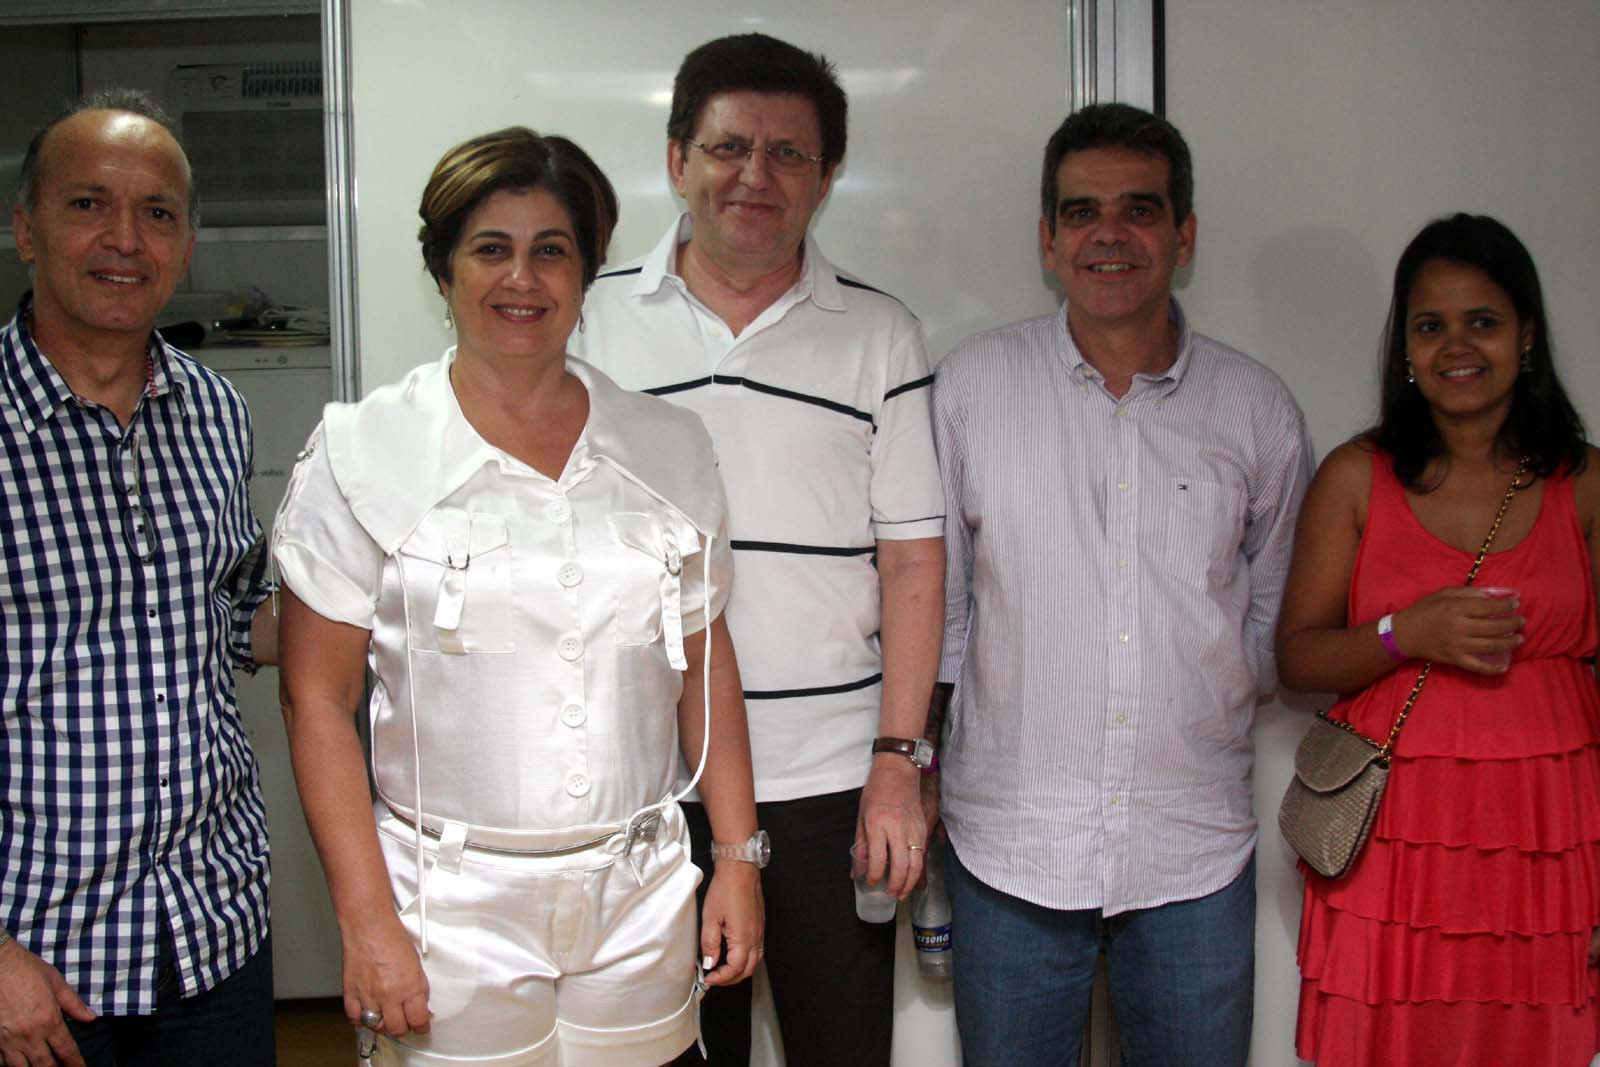 O superintendente da Caixa Econômica Federal, Carlos Roberto Pereira (à esquerda da prefeita); o gerente regional Severino Ribas com a esposa (à direita) e o gerente da agência da Caixa, Daniel Pagung (Foto: Gerson Gomes)